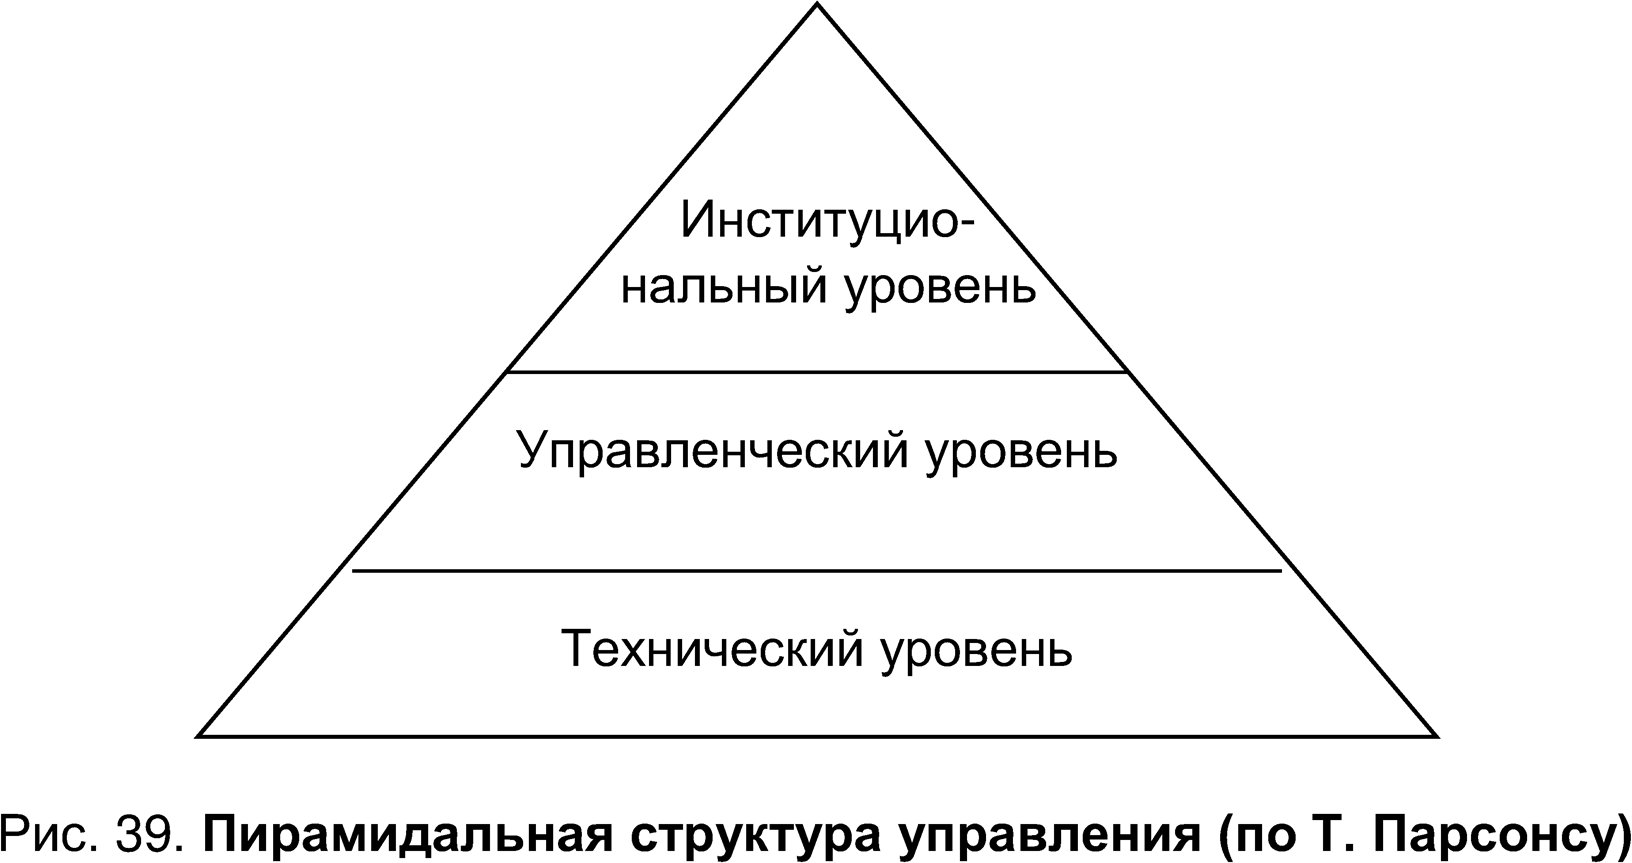 Пирамидальная структура управления (по Т. Парсонсу)